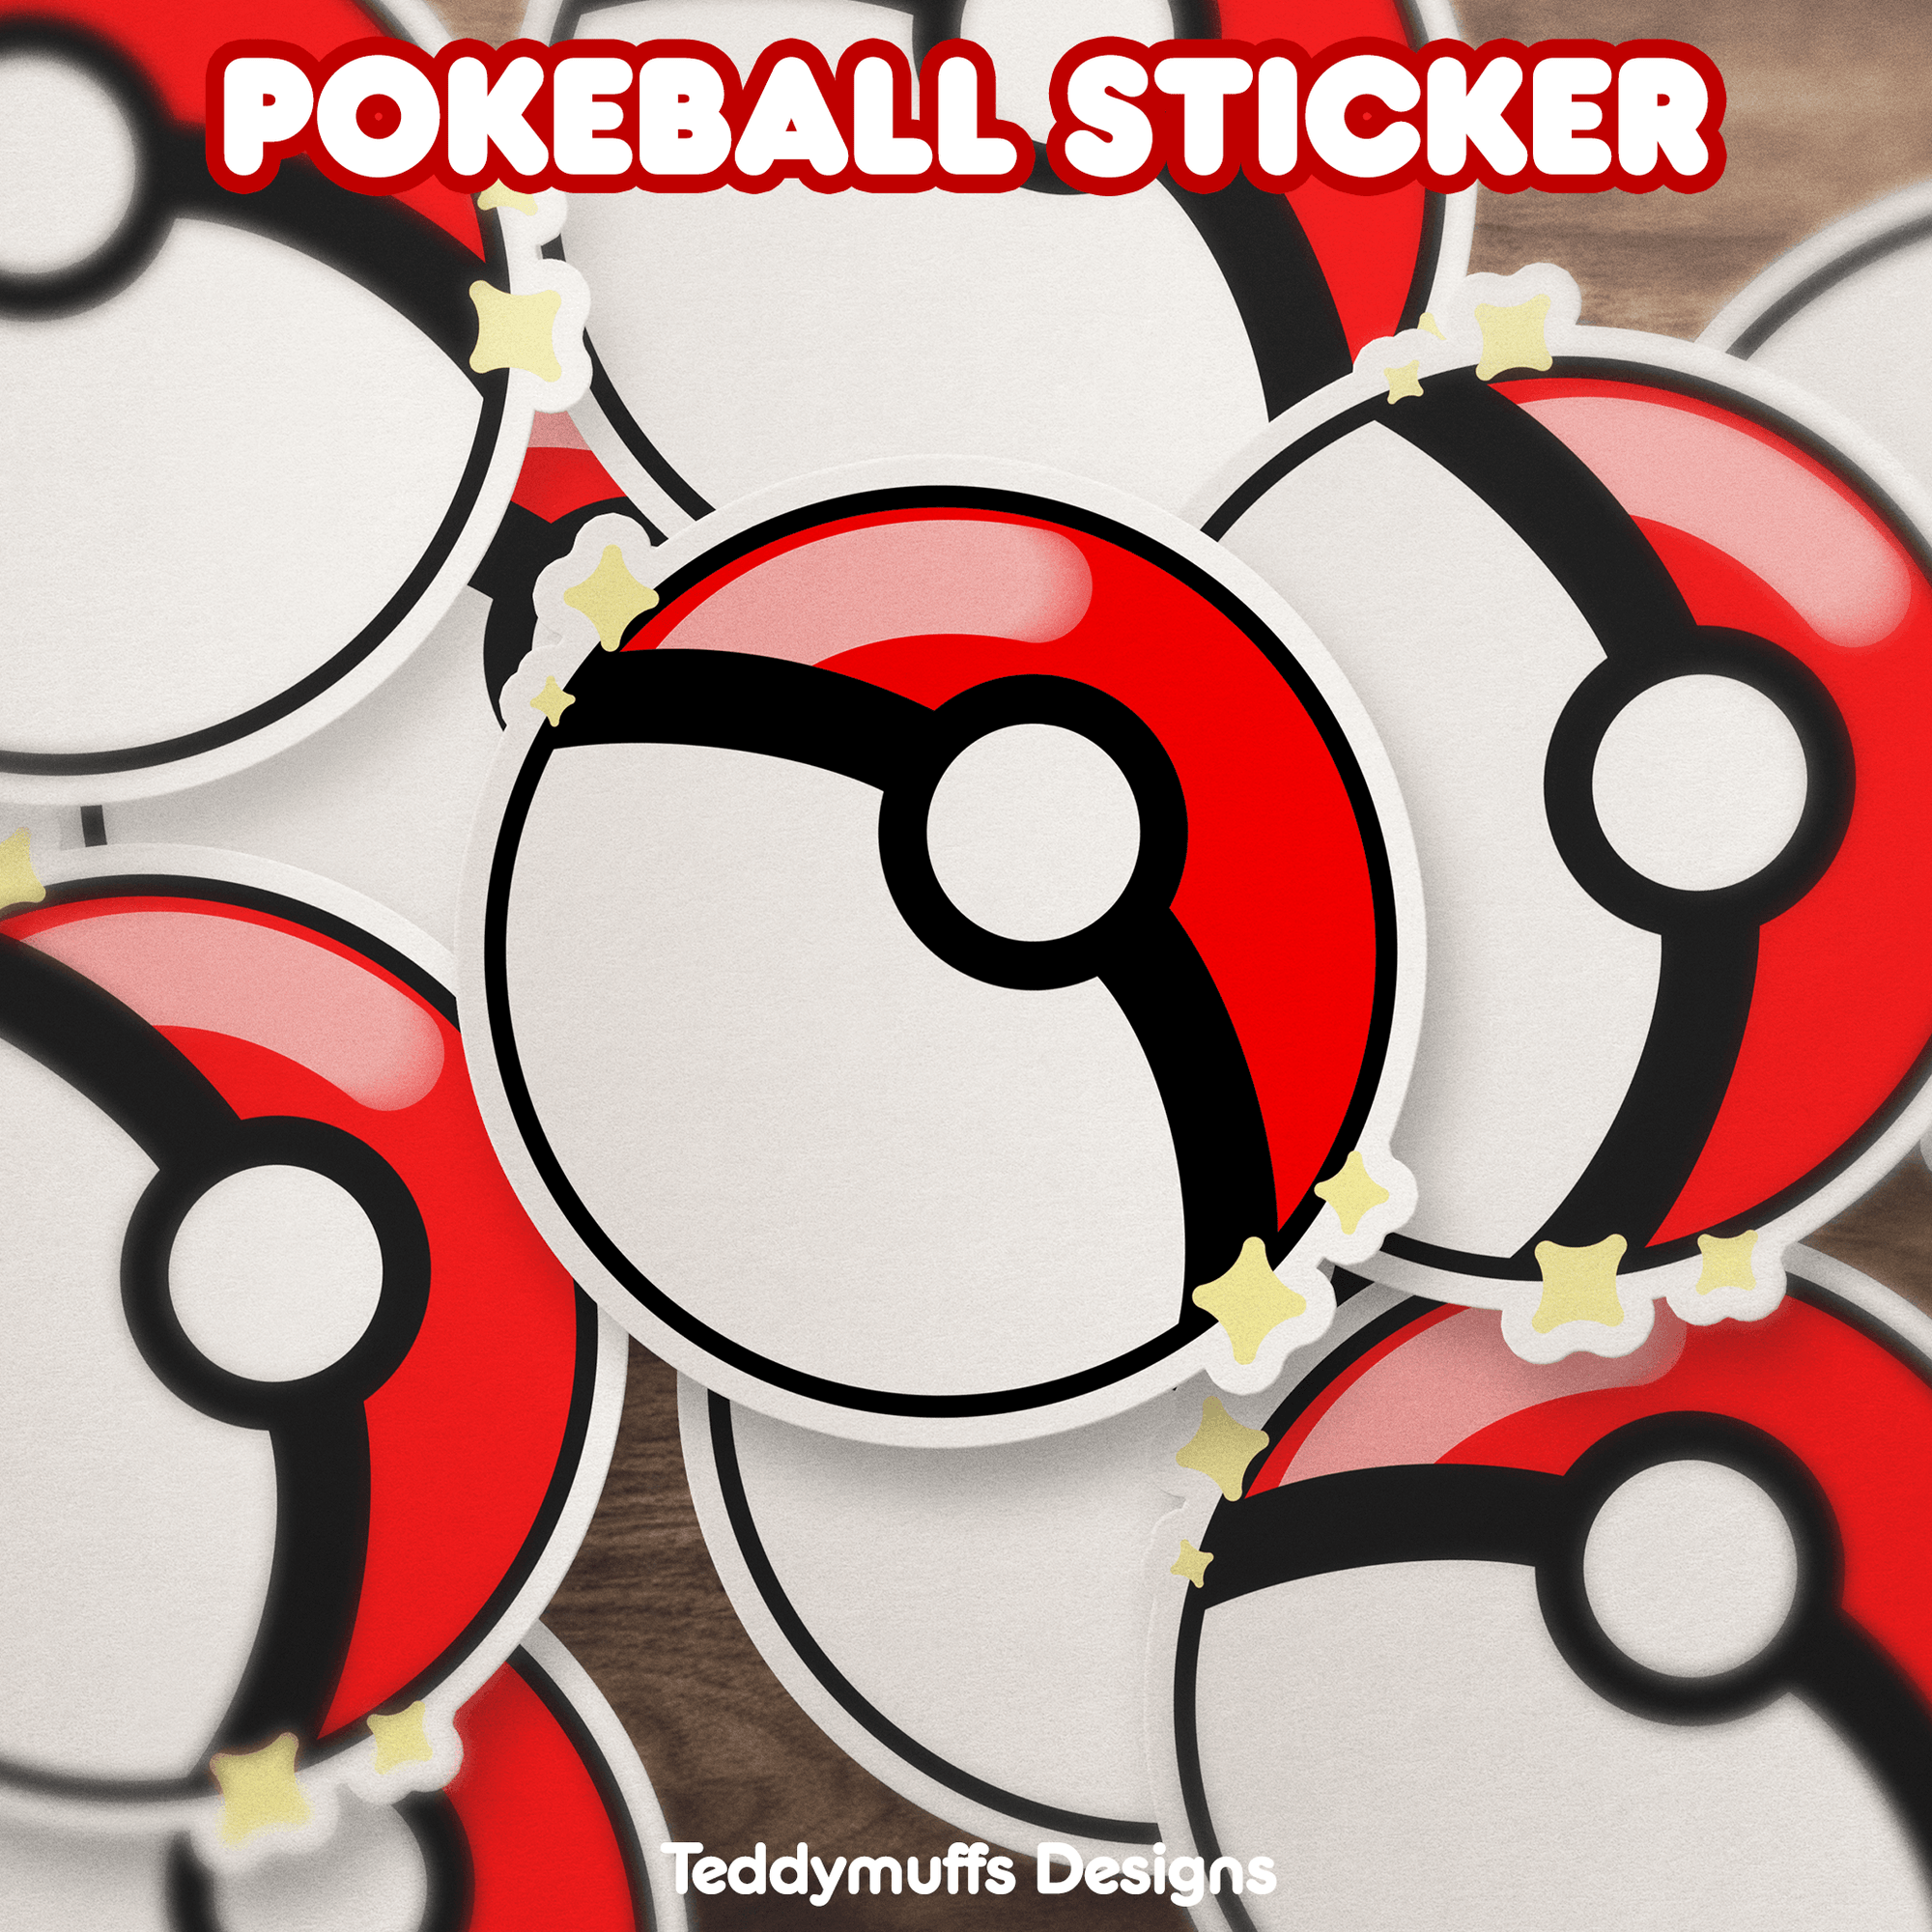 Poké Ball Sticker - Teddymuffs Designs